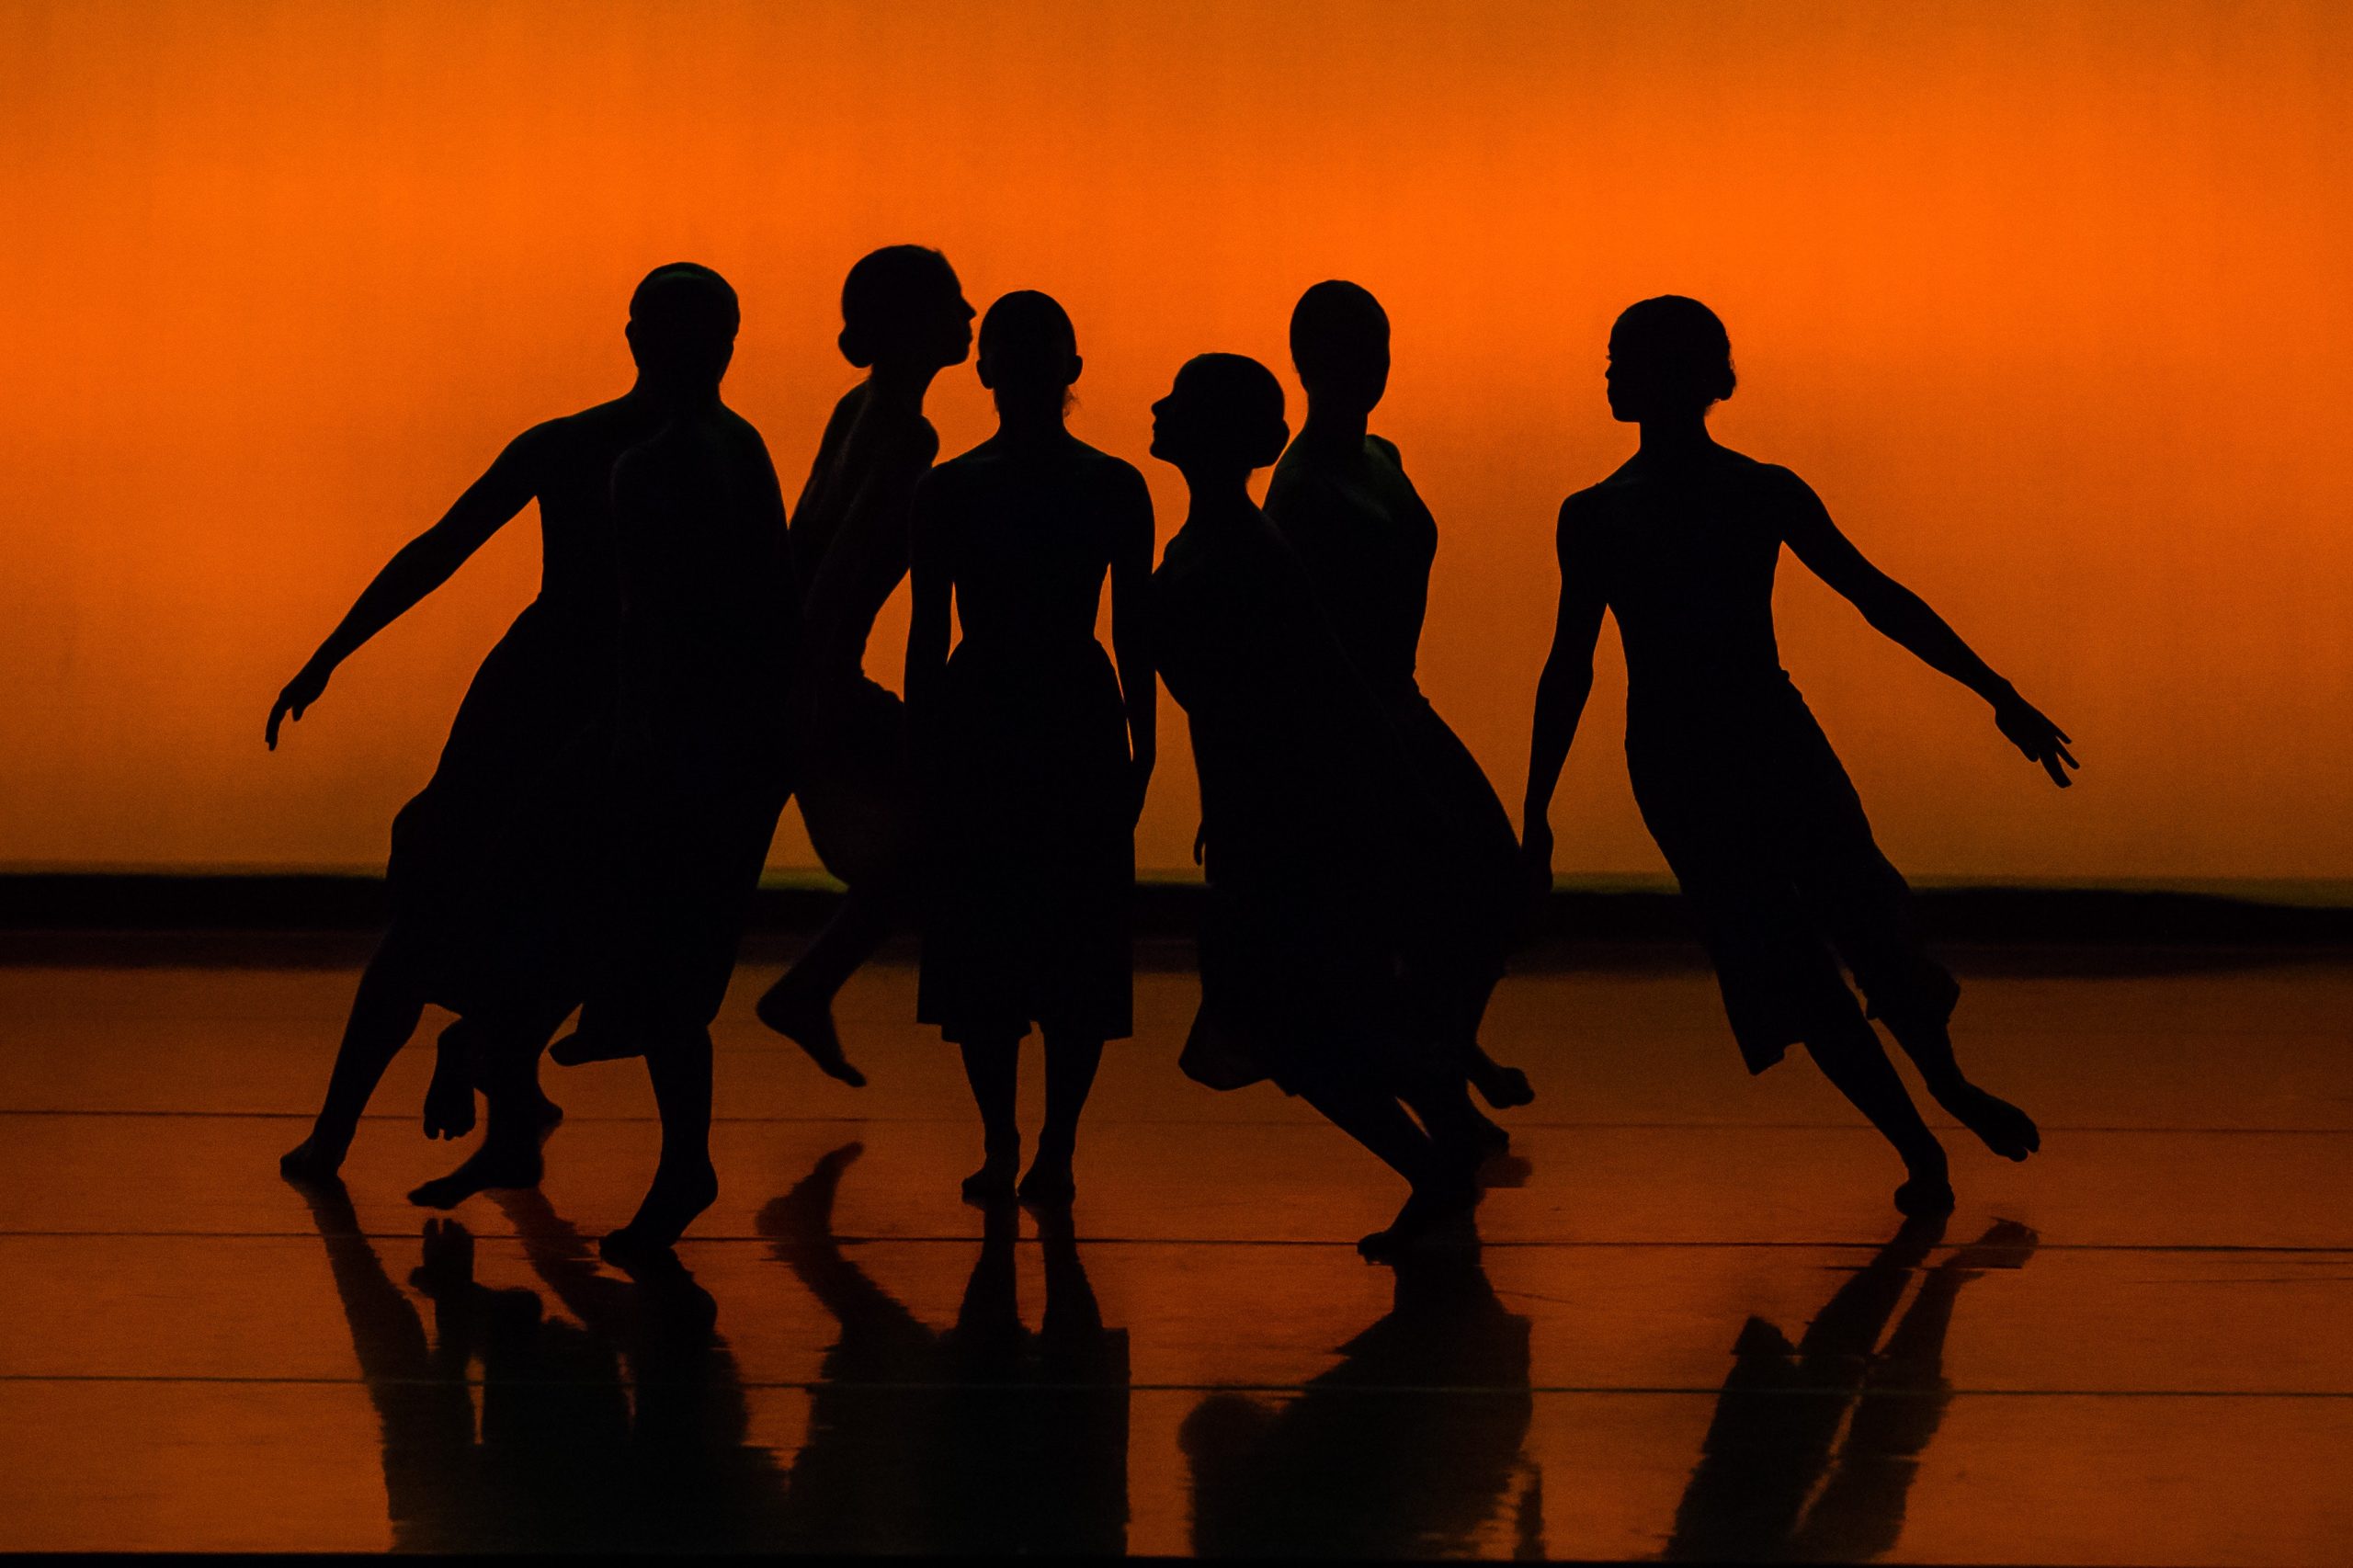 Spectacle de danse avec six interprètes sur scène. © Joseph Phillips/pexels